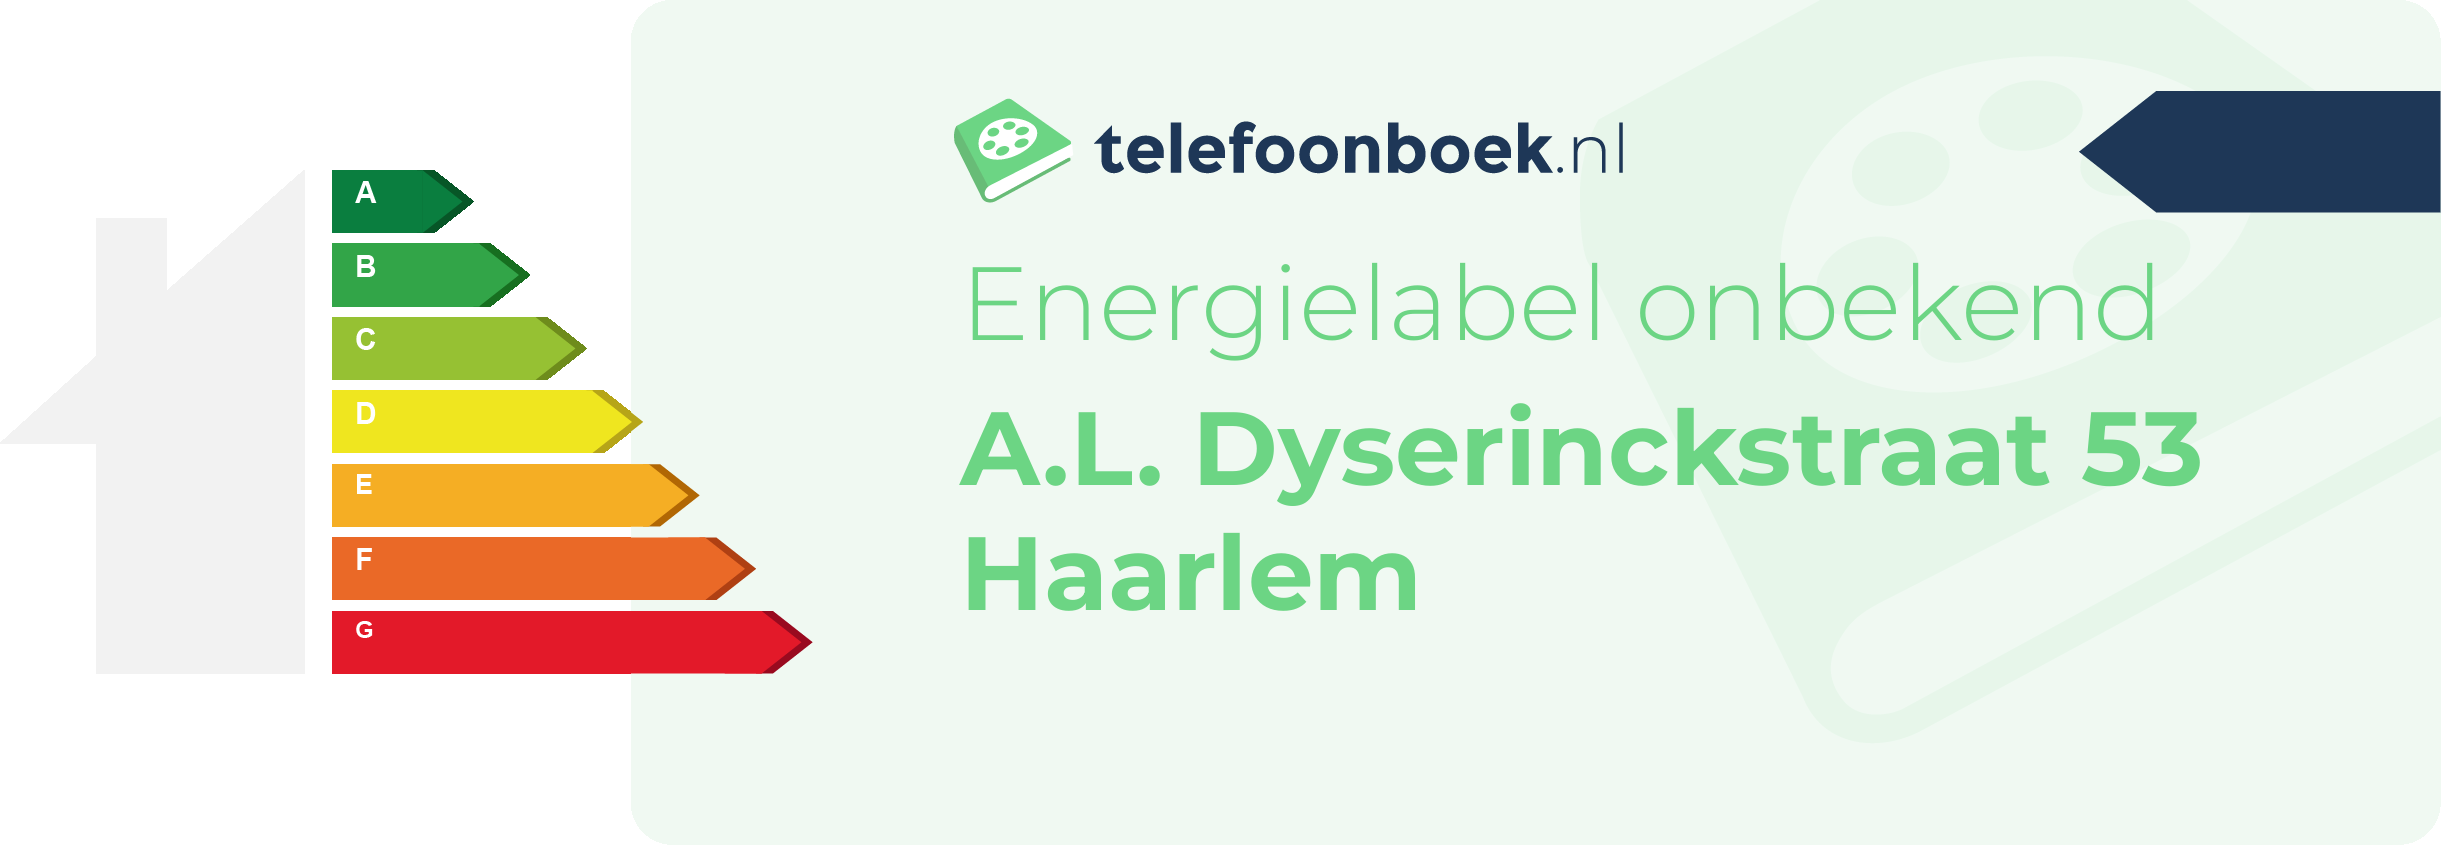 Energielabel A.L. Dyserinckstraat 53 Haarlem